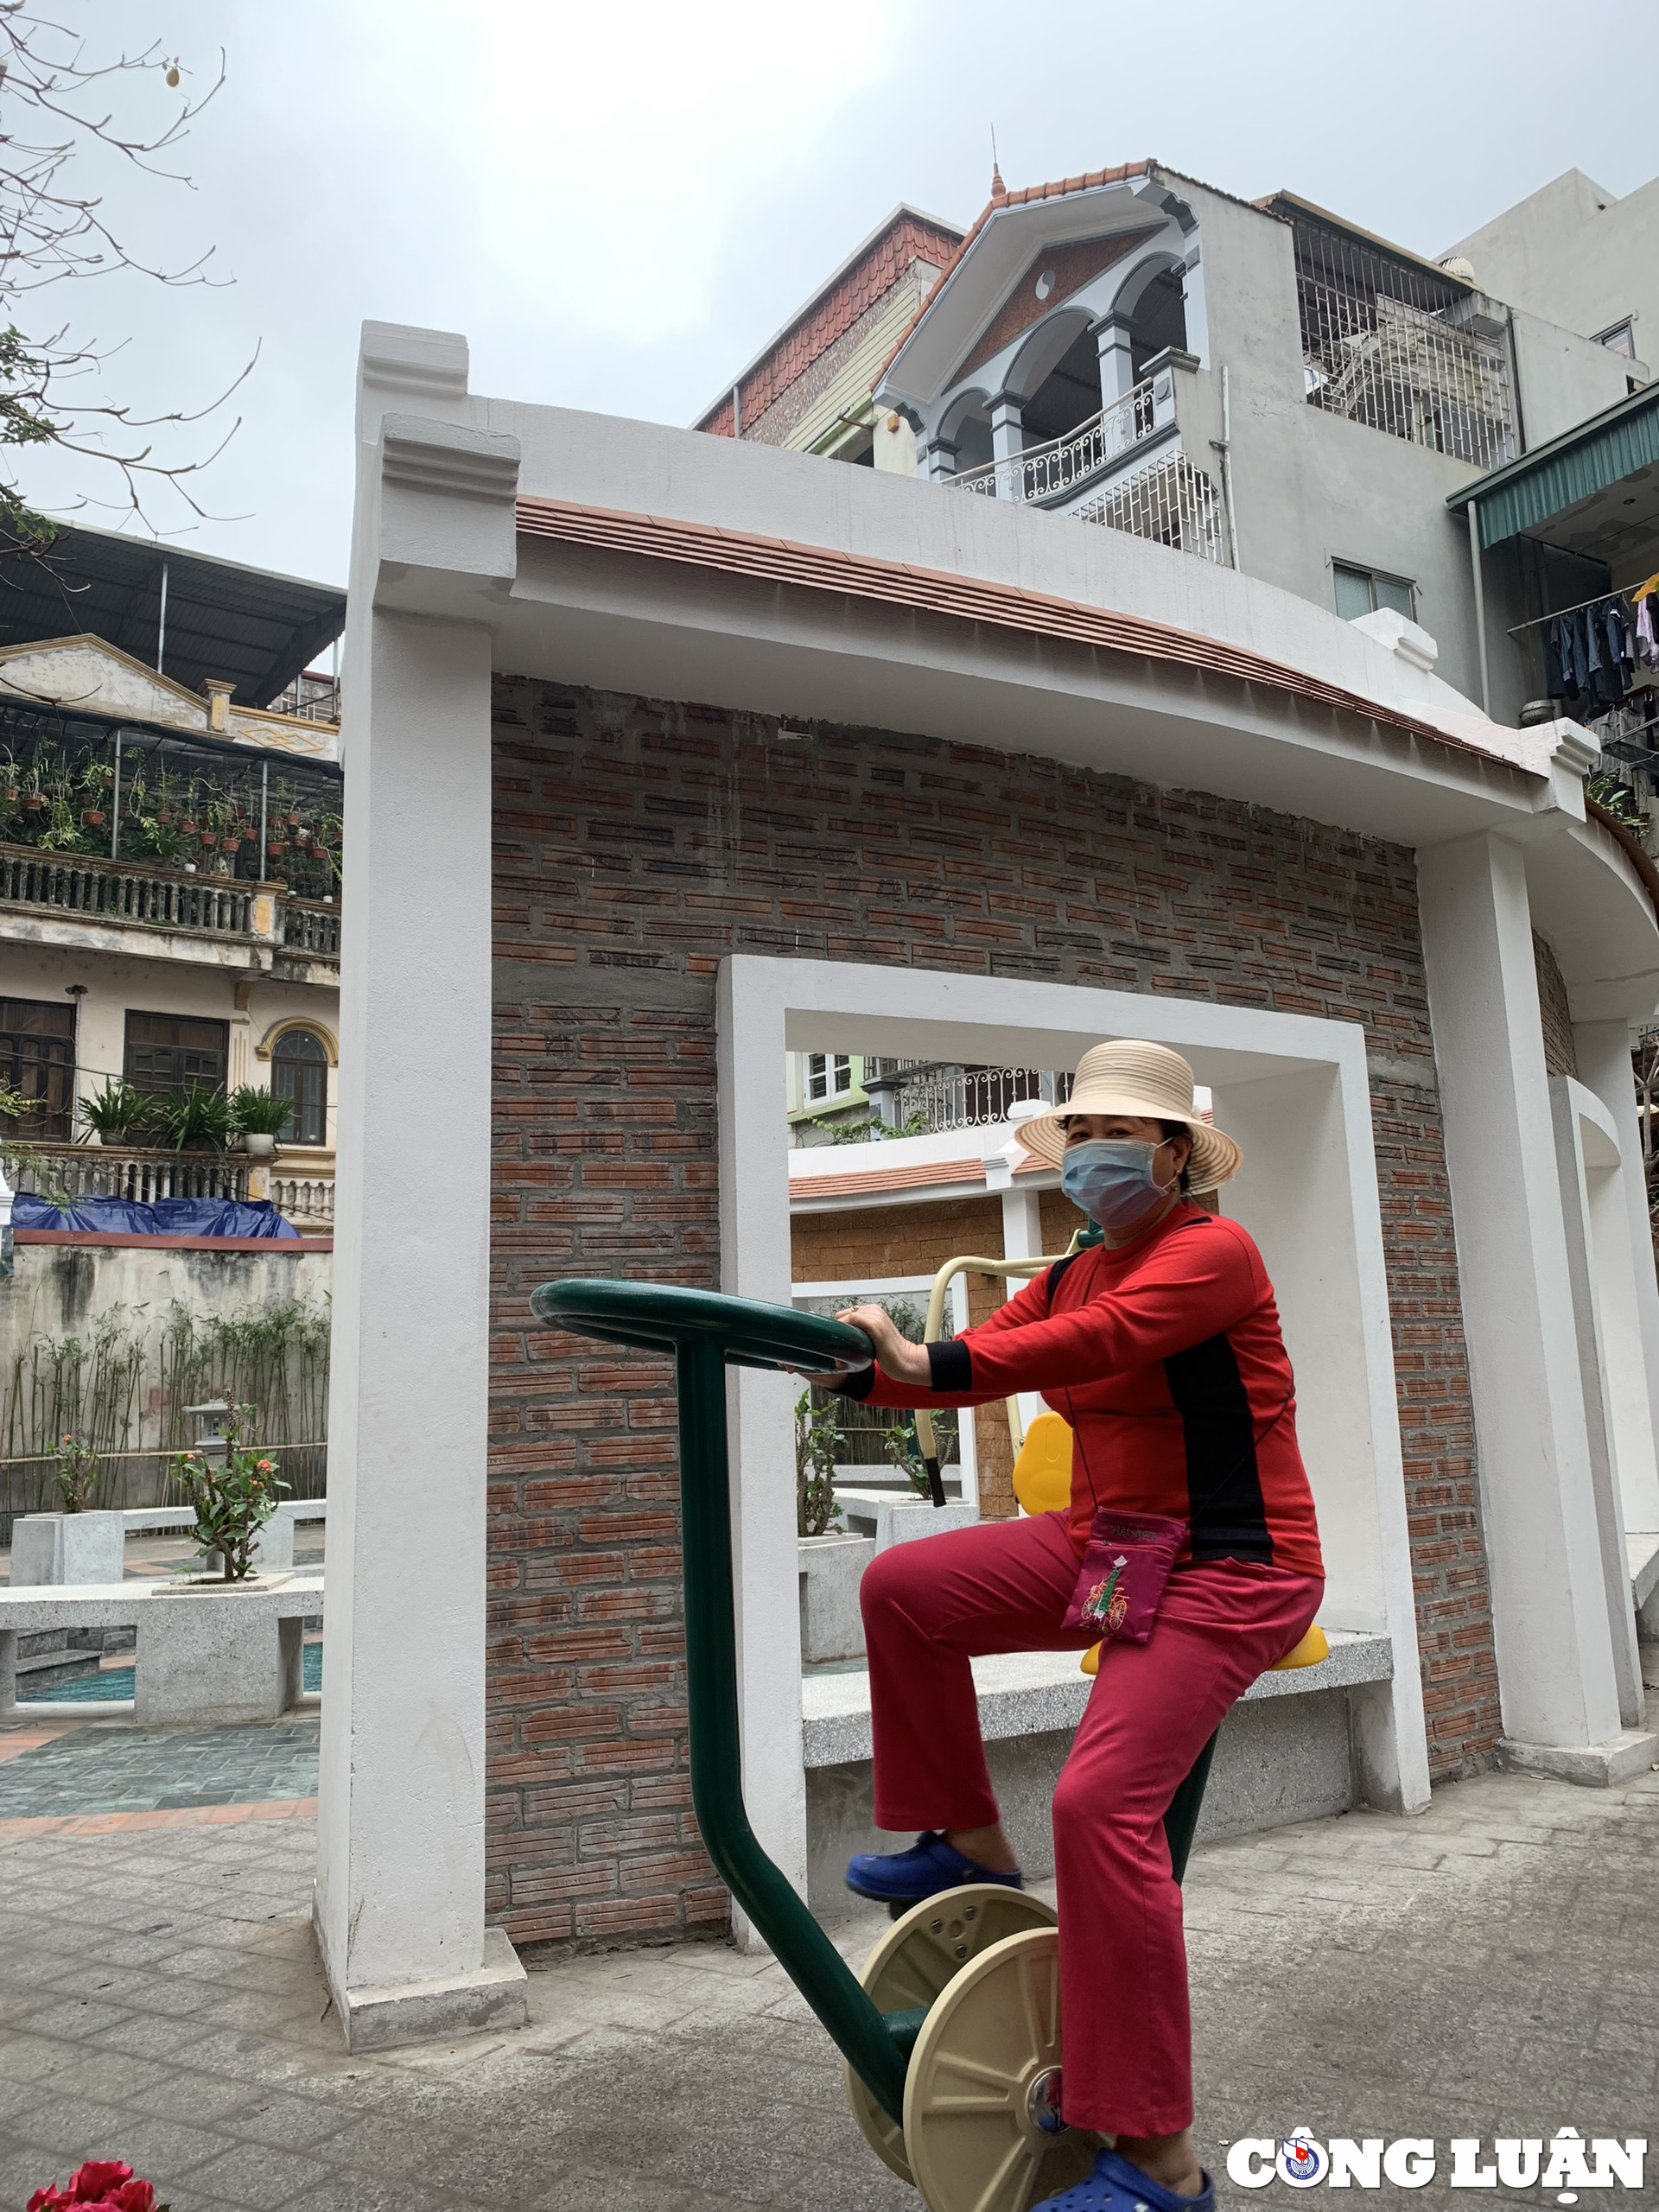 Ấn tượng với khu vui chơi cải tạo từ 'giếng làng' giữa Thủ đô Hà Nội